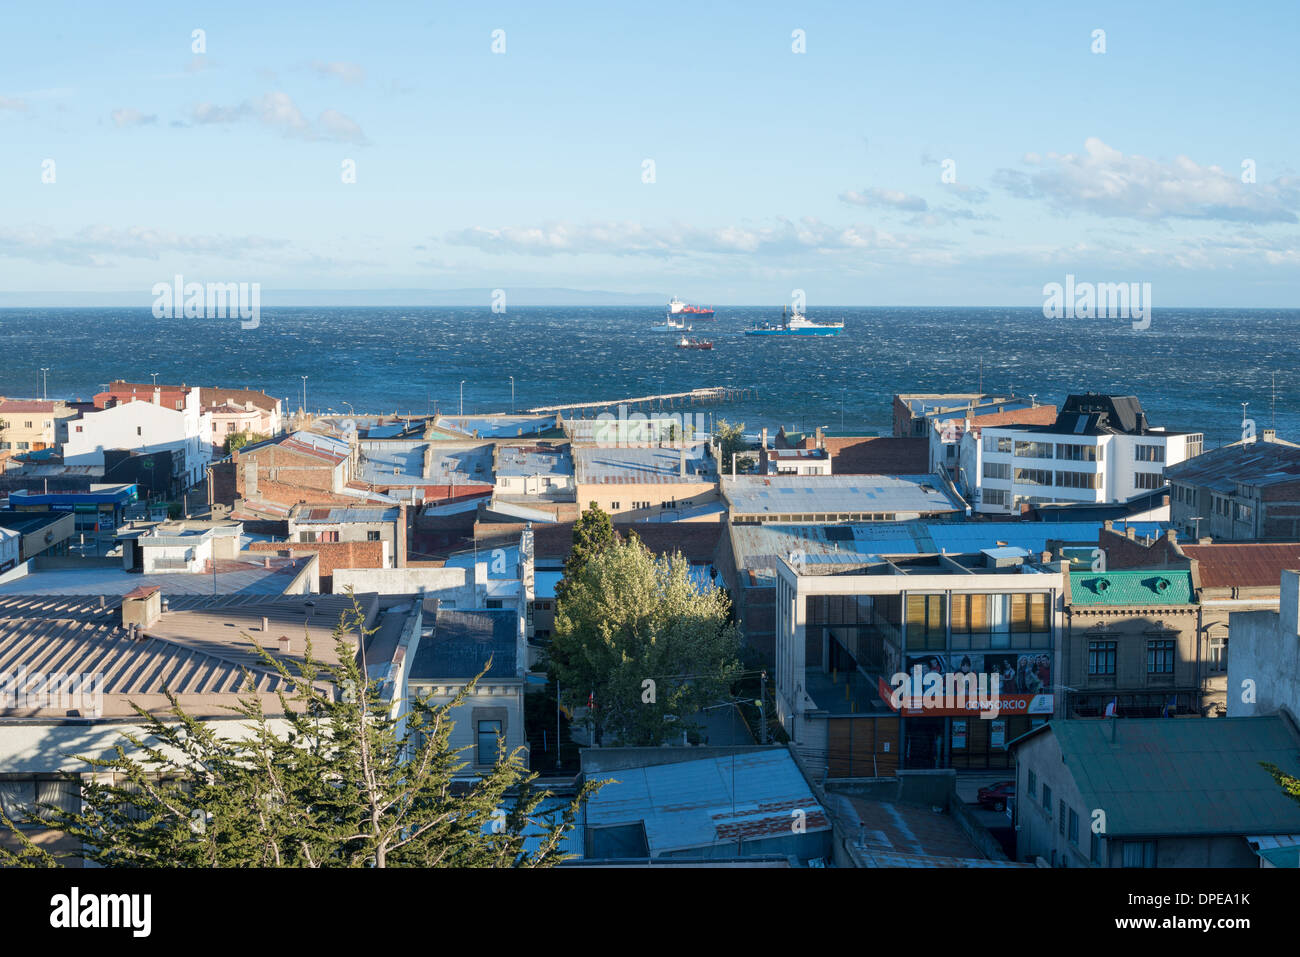 PUNTA Arenas, Cile - un forte vento fruste fino whitecaps sullo Stretto di Magellano come visto sopra i tetti di Punta Arenas, Cile. La città è la più grande a sud del parallelo 46a sud e la città capitale del Cile meridionale della regione di Magallanes e Antartica Chilena. Foto Stock